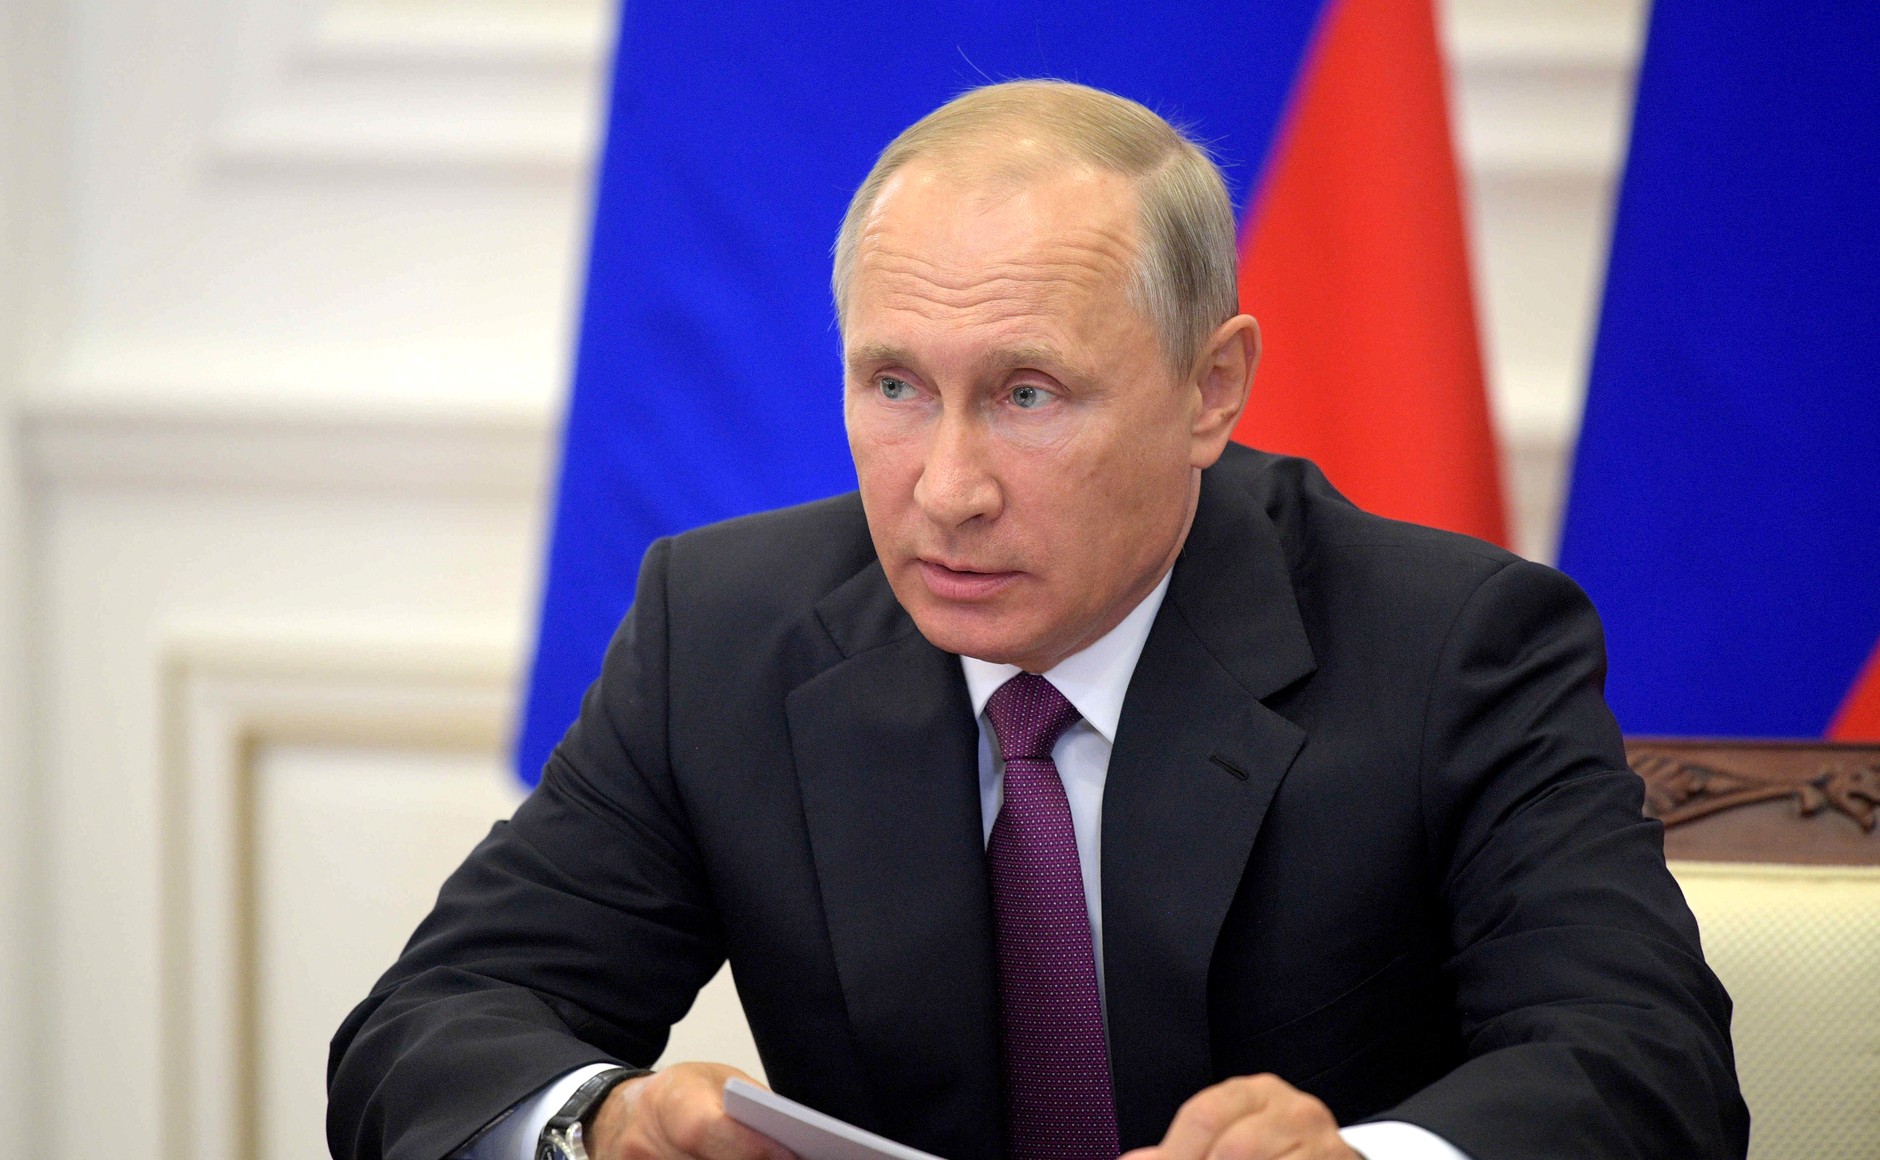 Путин охарактеризовал ситуацию с COVID-19 в России